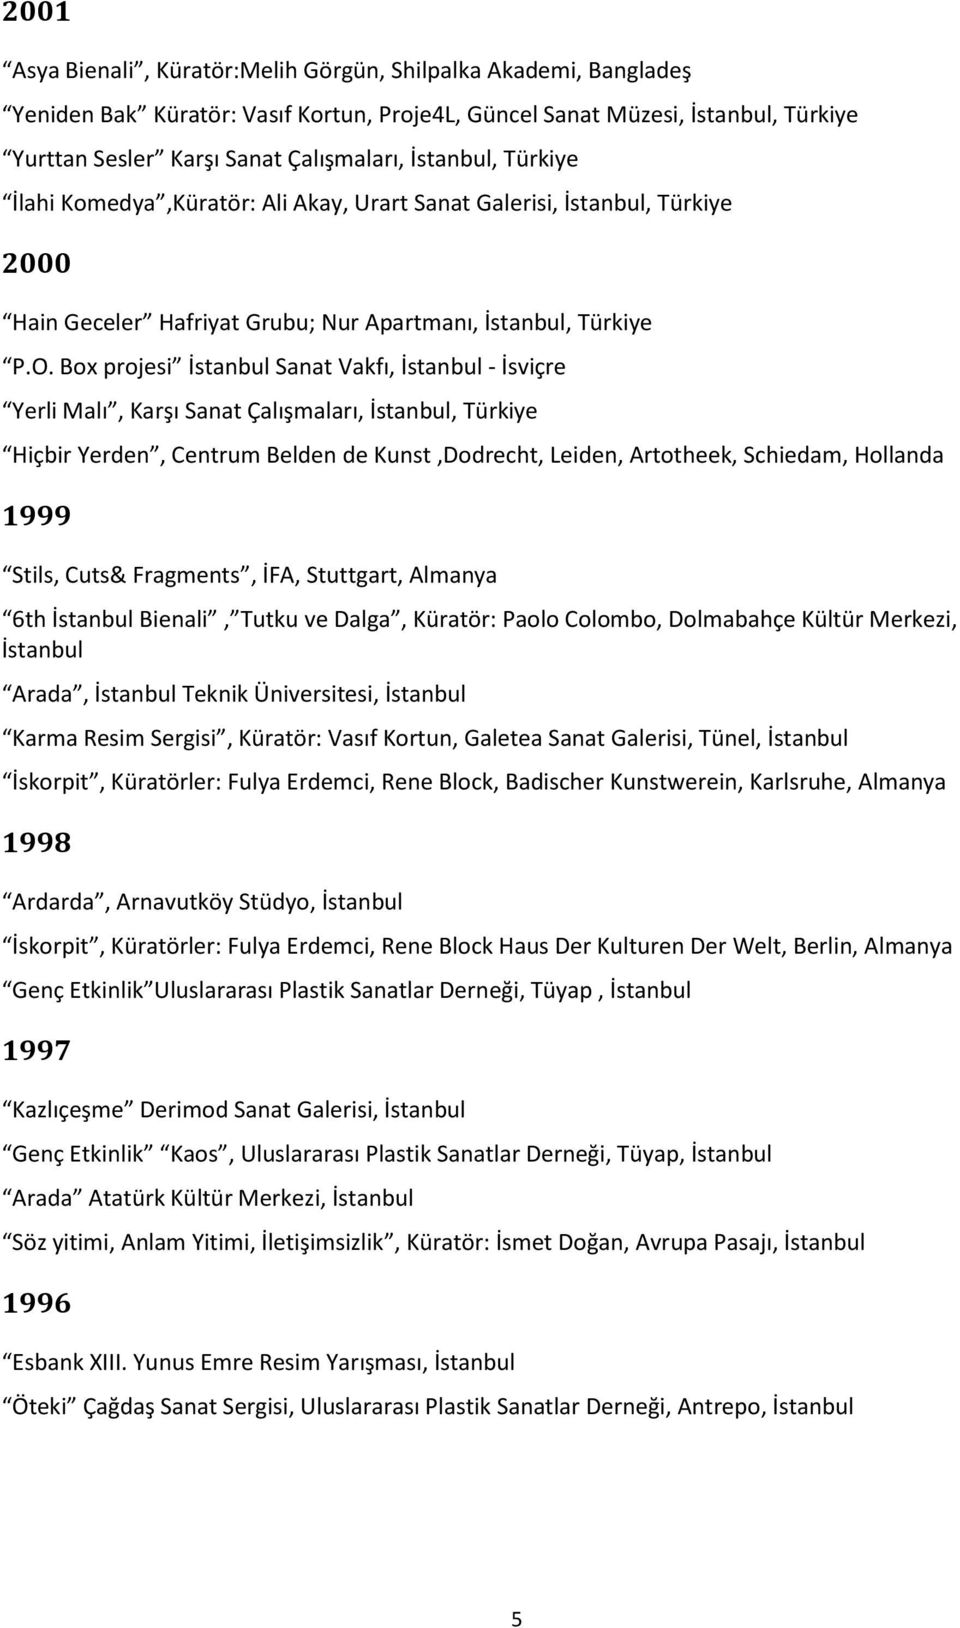 Box projesi İstanbul Sanat Vakfı, İstanbul - İsviçre Yerli Malı, Karşı Sanat Çalışmaları, İstanbul, Türkiye Hiçbir Yerden, Centrum Belden de Kunst,Dodrecht, Leiden, Artotheek, Schiedam, Hollanda 1999